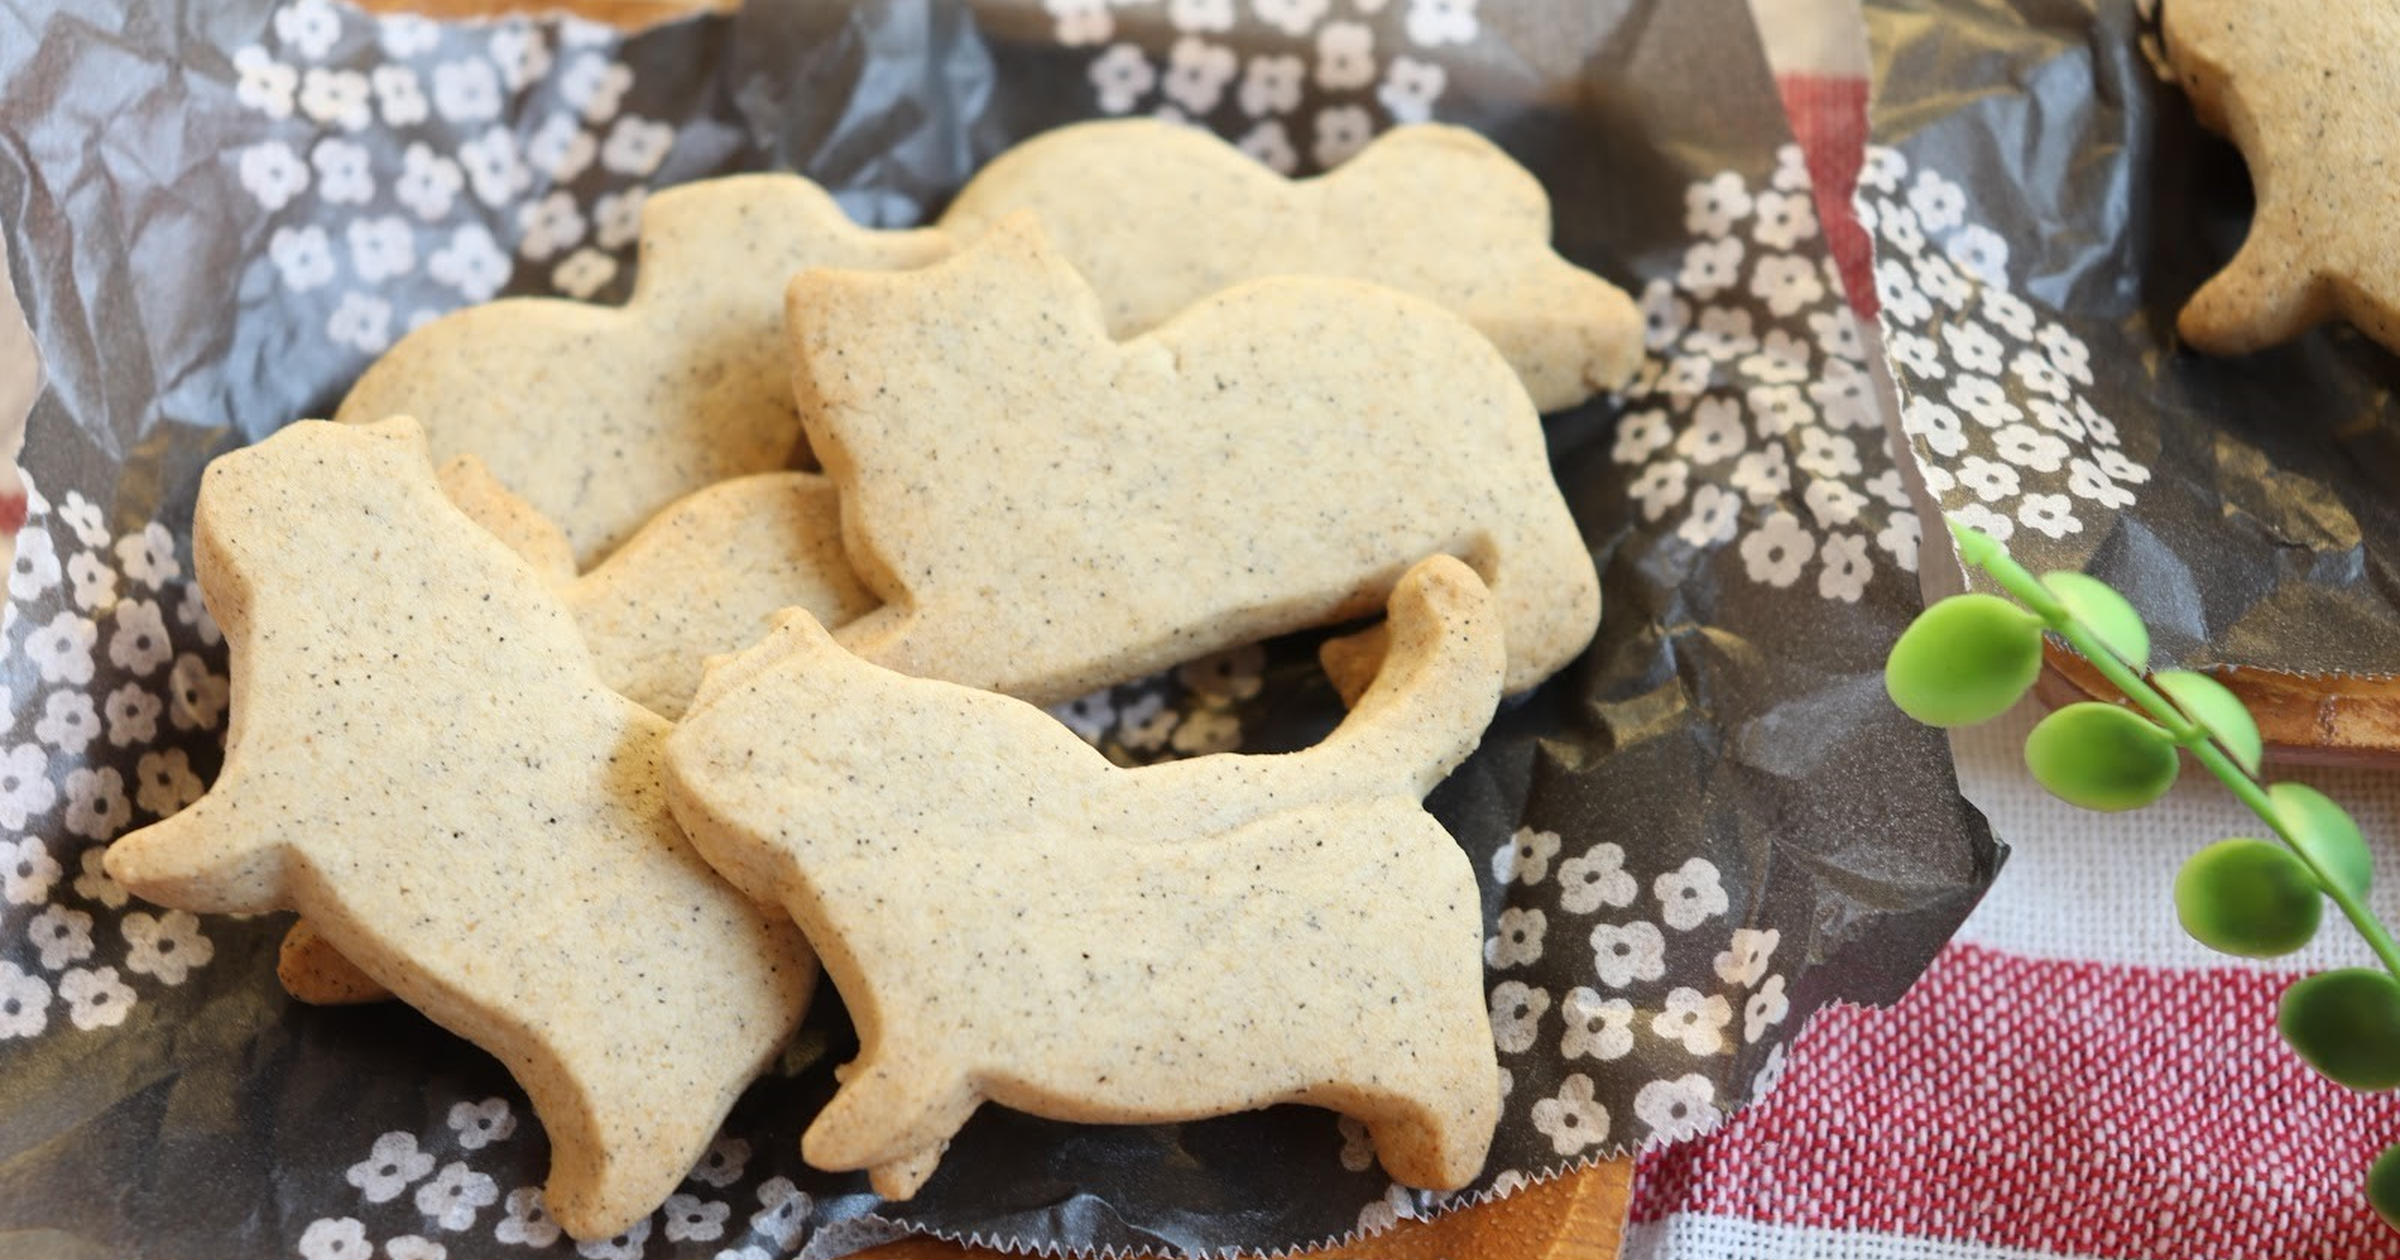 小麦粉 ホケミ不要 片栗粉で作るスイーツレシピ クッキー プリン ドーナツ トクバイニュース